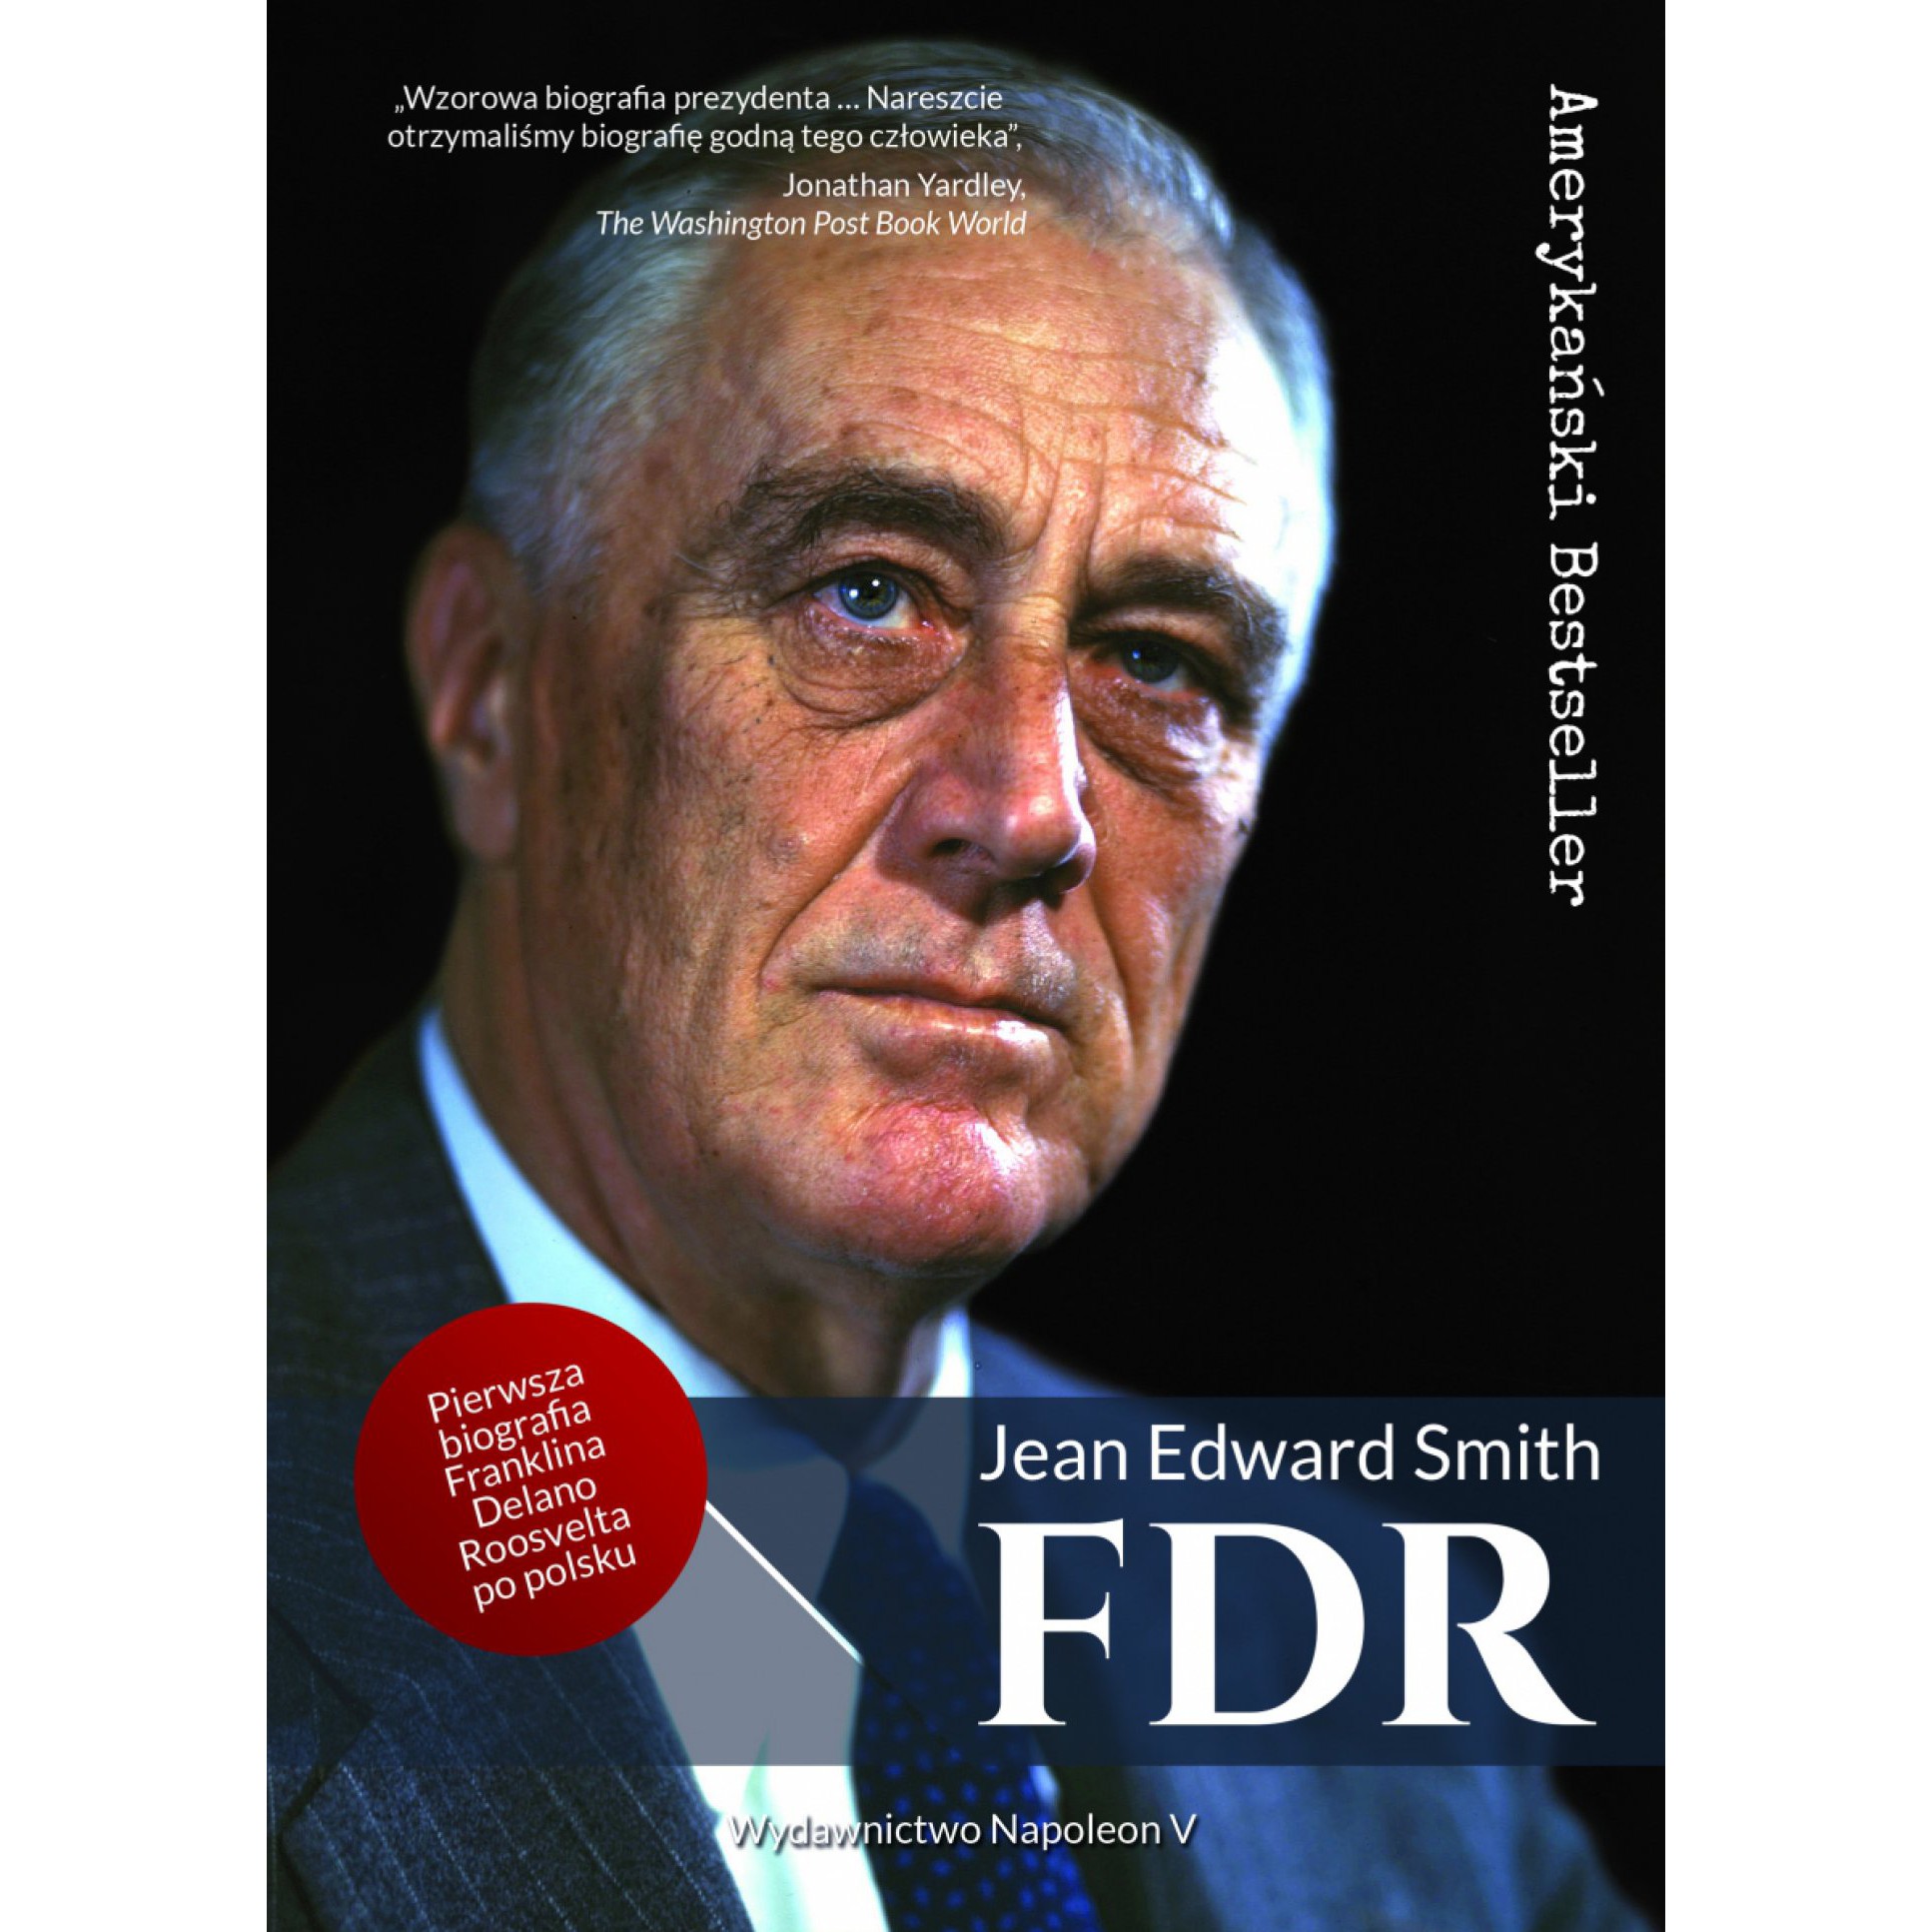 FDR. Franklin Delano Roosevelt